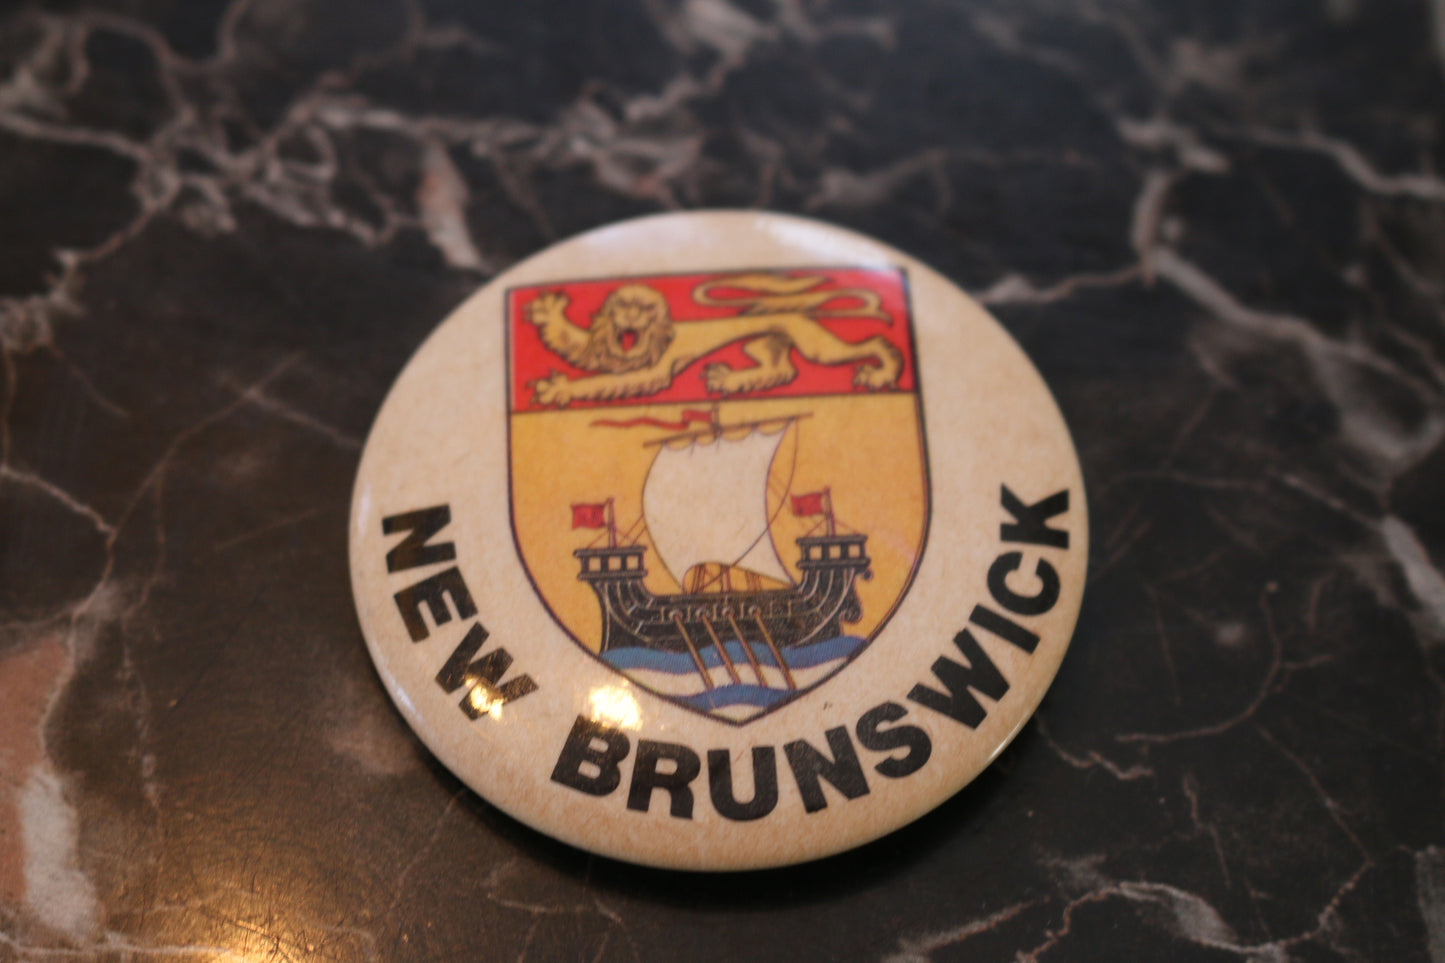 Vintage button Macaron Souvenir New brunswick pinback